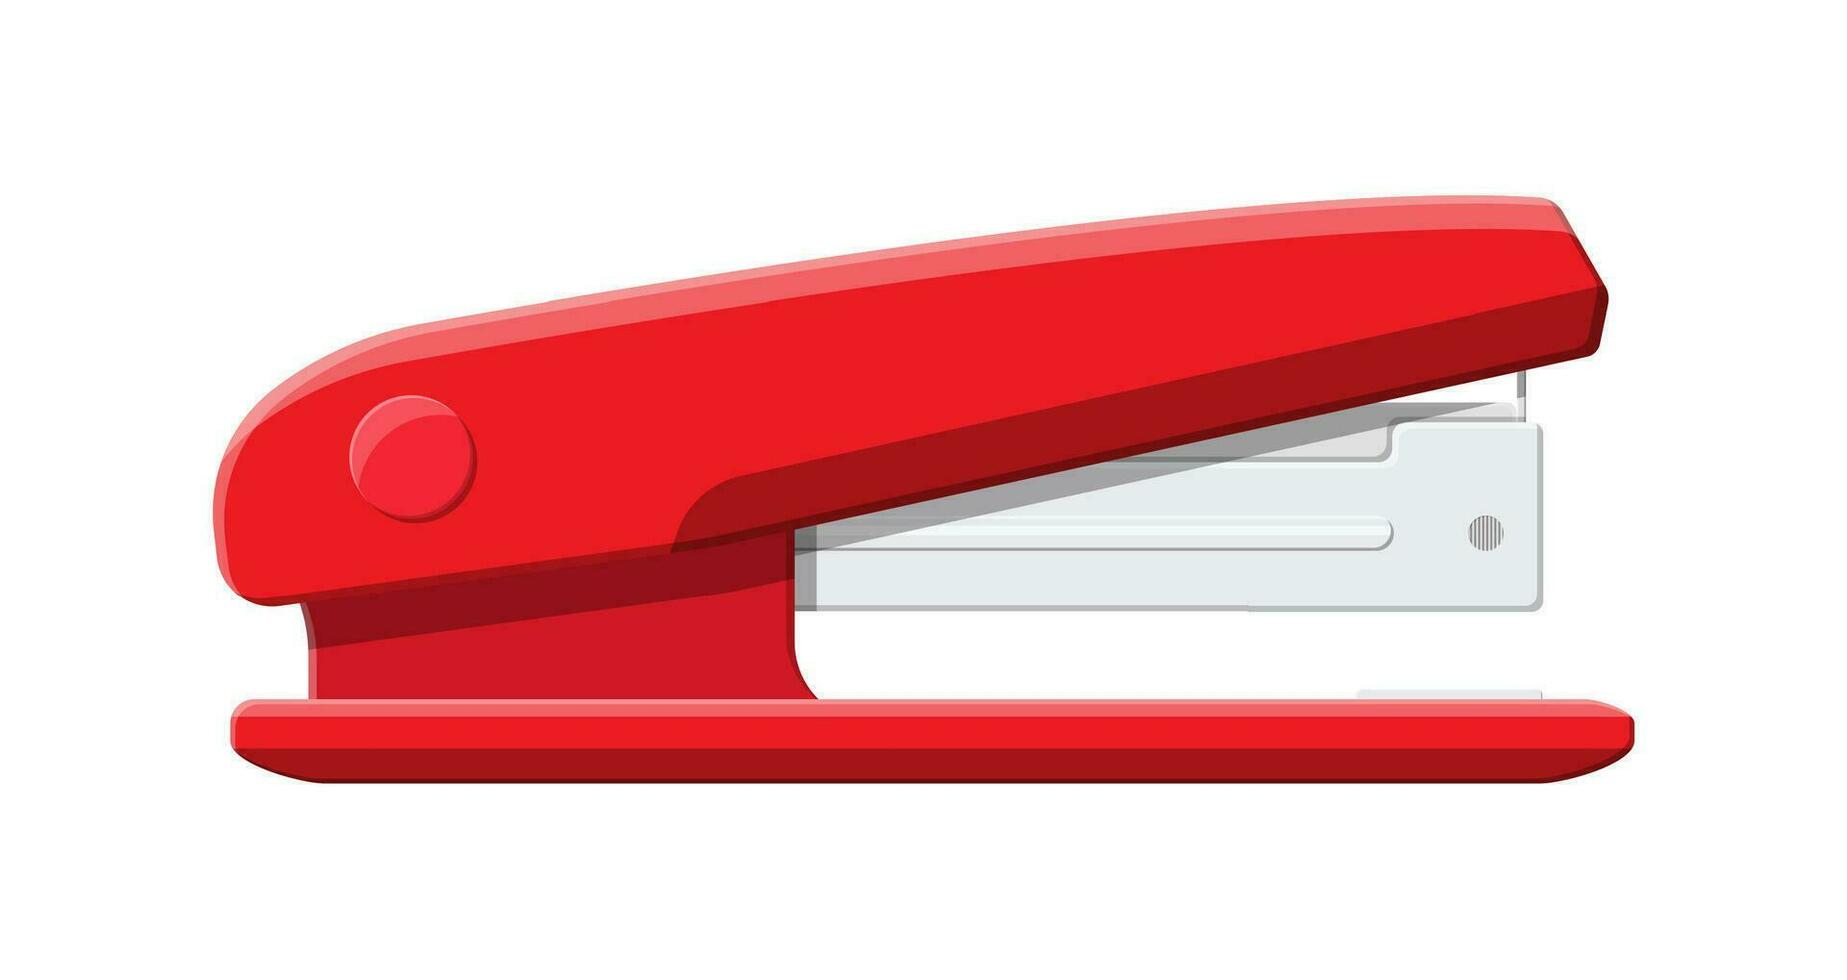 röd plast häftapparat. enhet för fastsättning lakan. kontor och skola Utrustning, pappersvaror. vektor illustration i platt stil